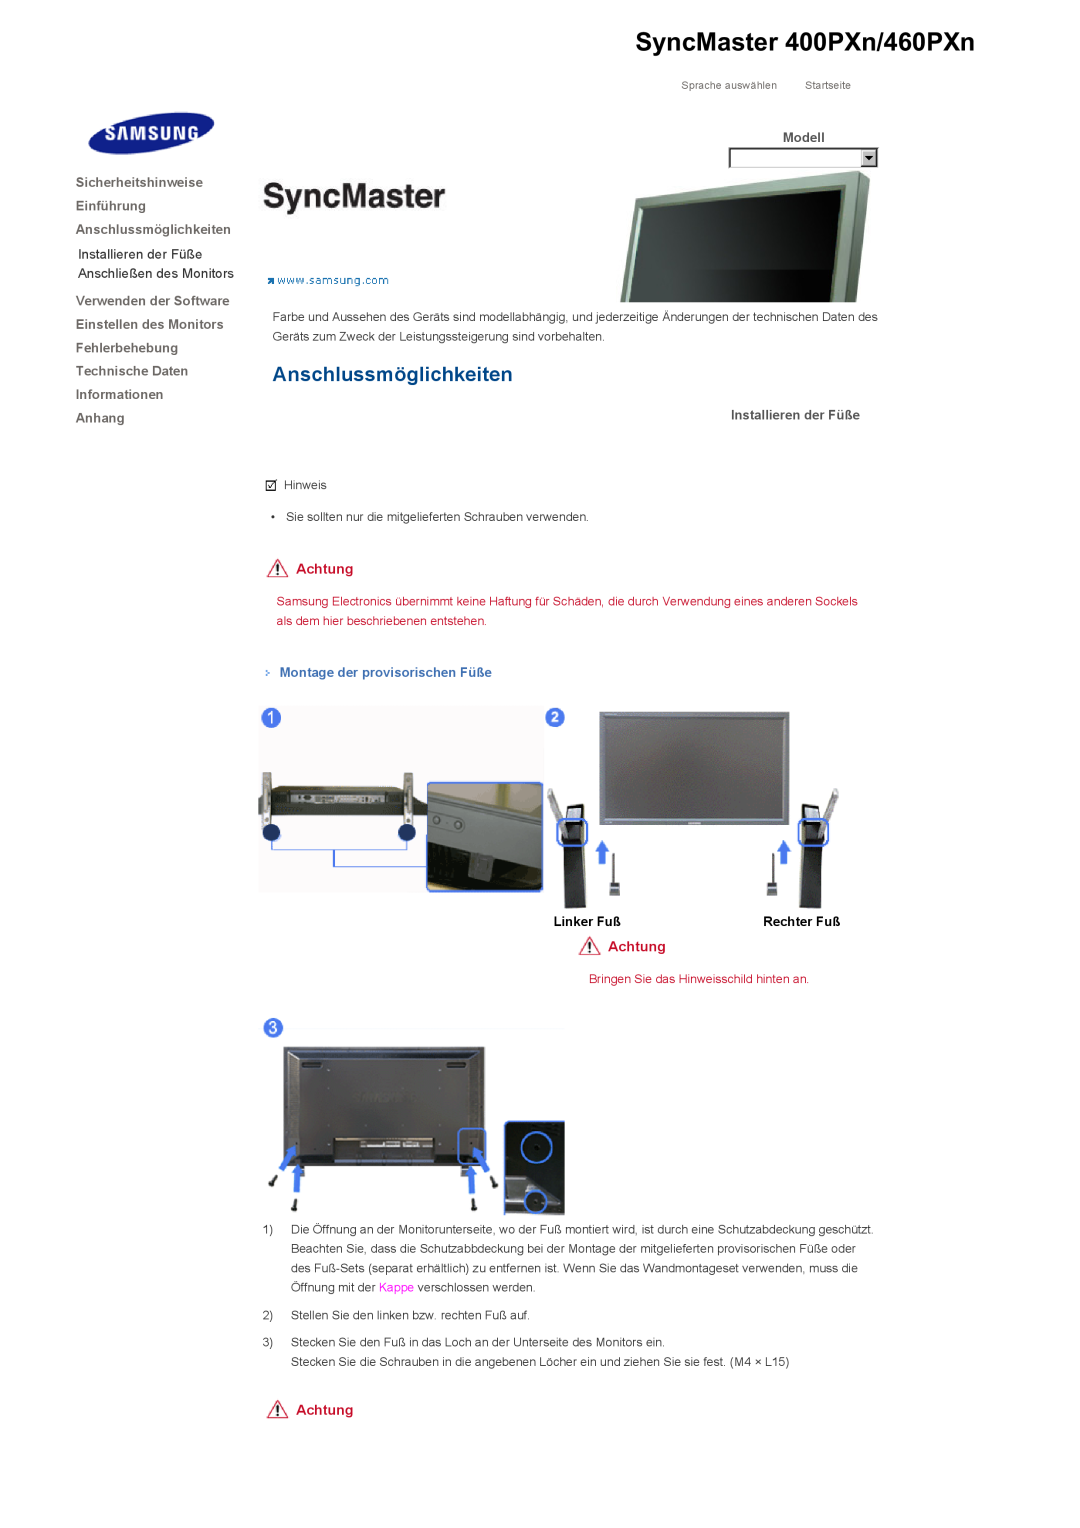 Samsung LS46BHYNBF/EDC manual SyncMaster 400PXn/460PXn, Anschlussmöglichkeiten, Dodatak, ǷȘȐȓȖȎȍȕȐȍ, Achtung, Linker Fuß 